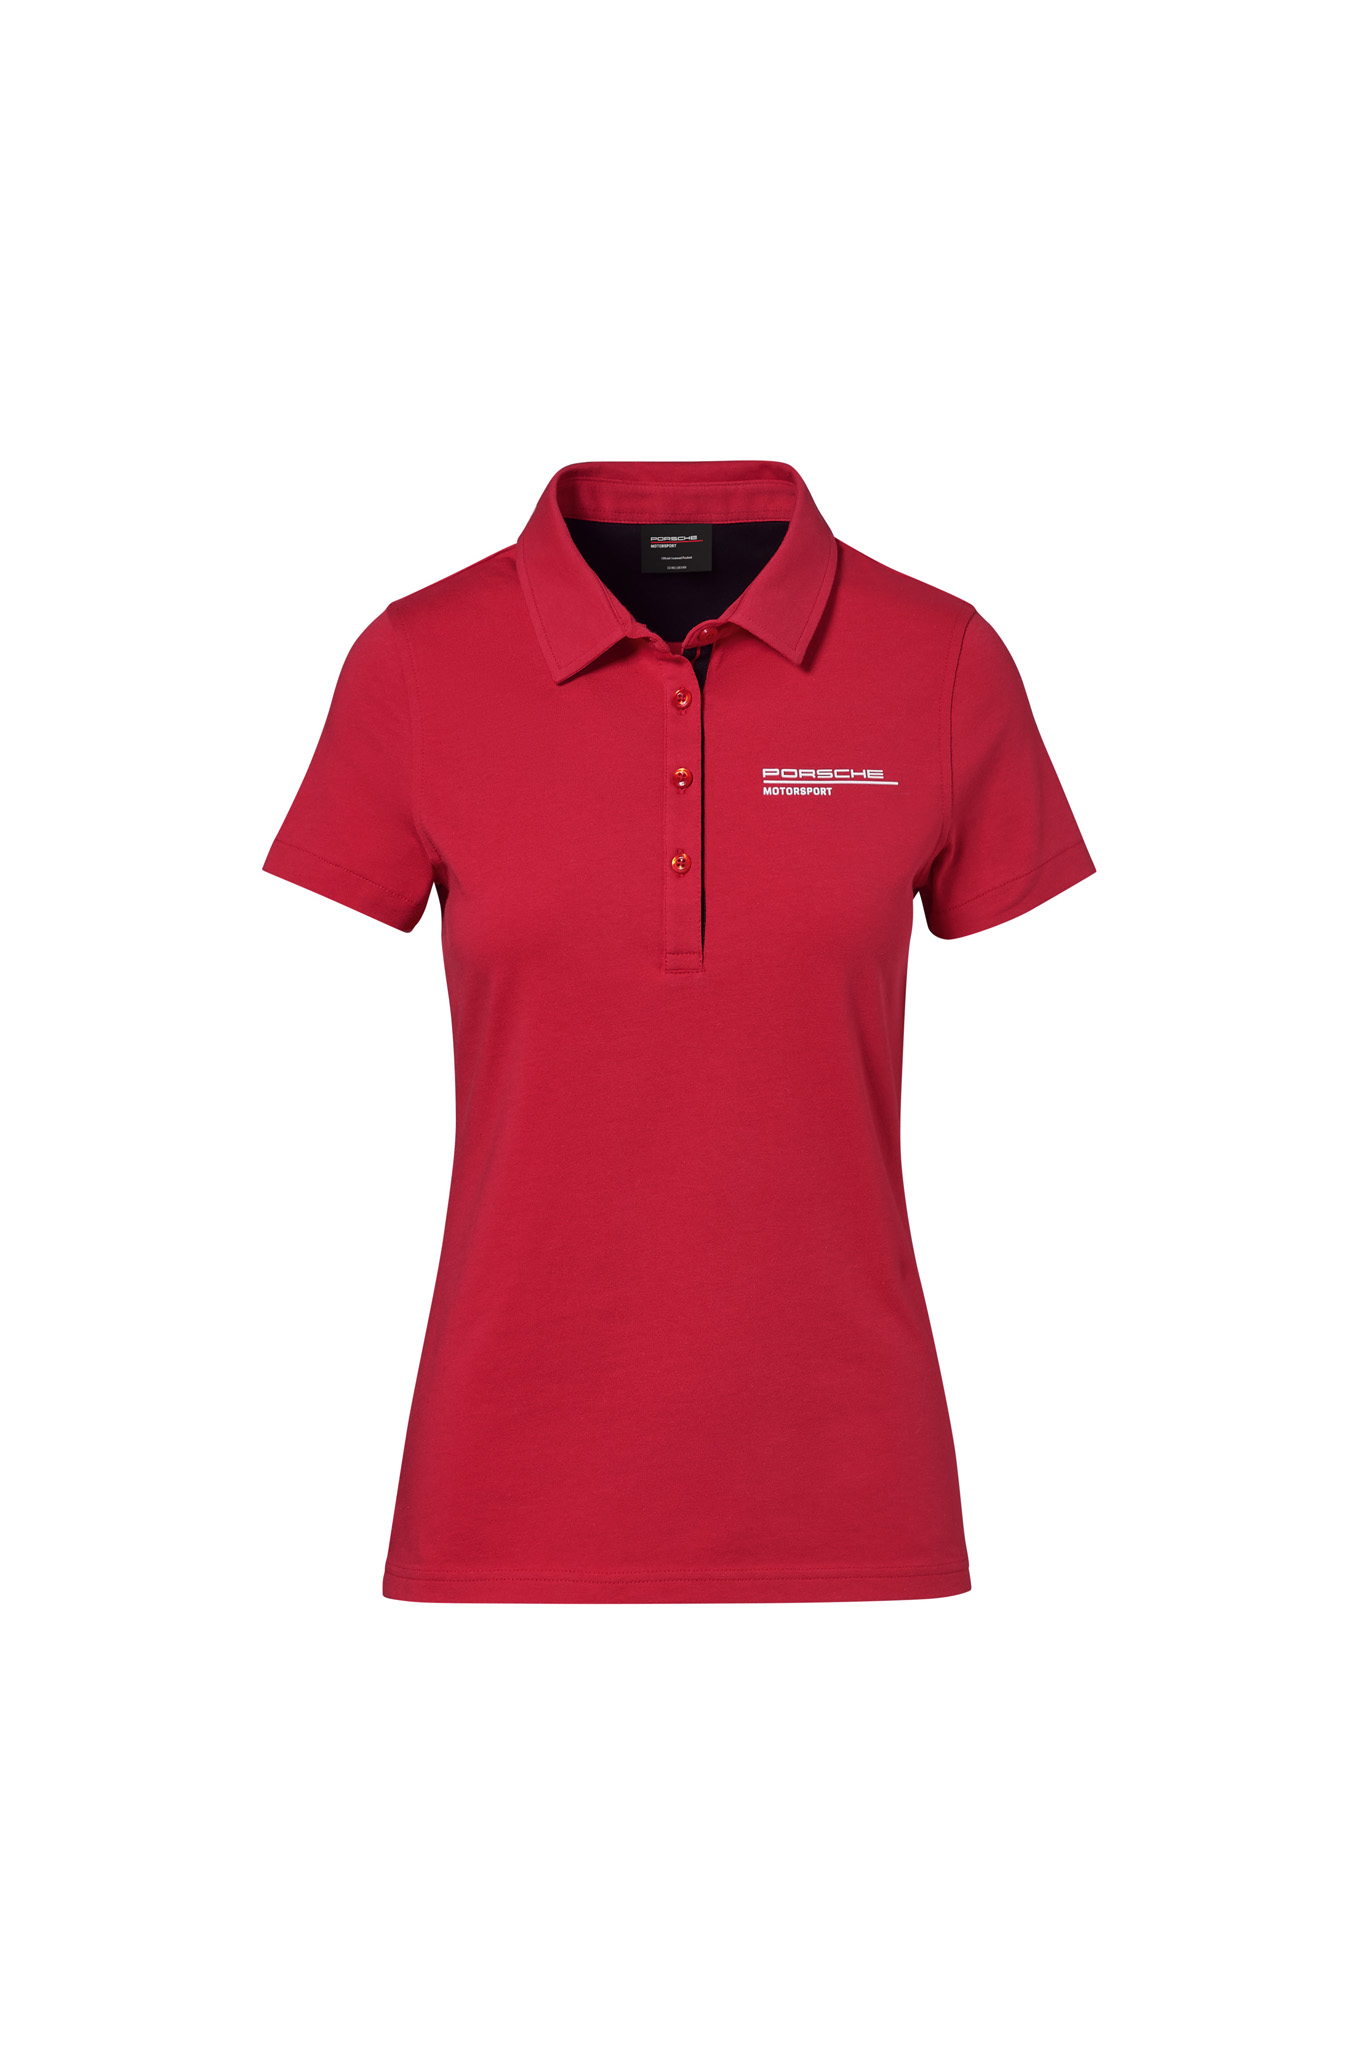 Сорочка поло червона, жіноча - Motorsports Fanwear